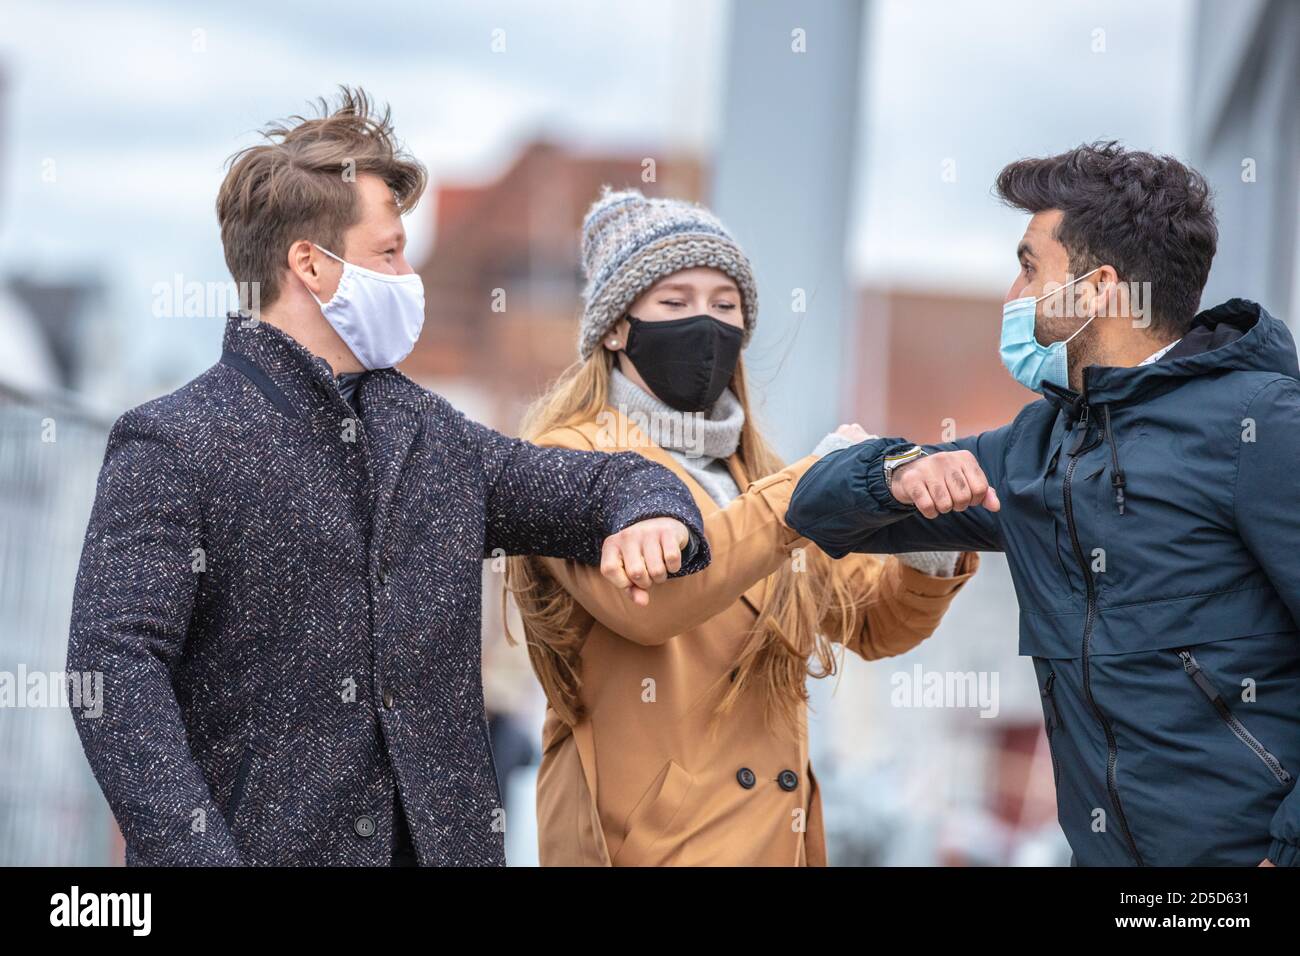 Zwei Männer und eine Frau begrüssen sich mit dem Ellenbogen. Corona-Zeit mit alltäglichen Masken in der kalten Jahreszeit in der Stadt. Foto de stock